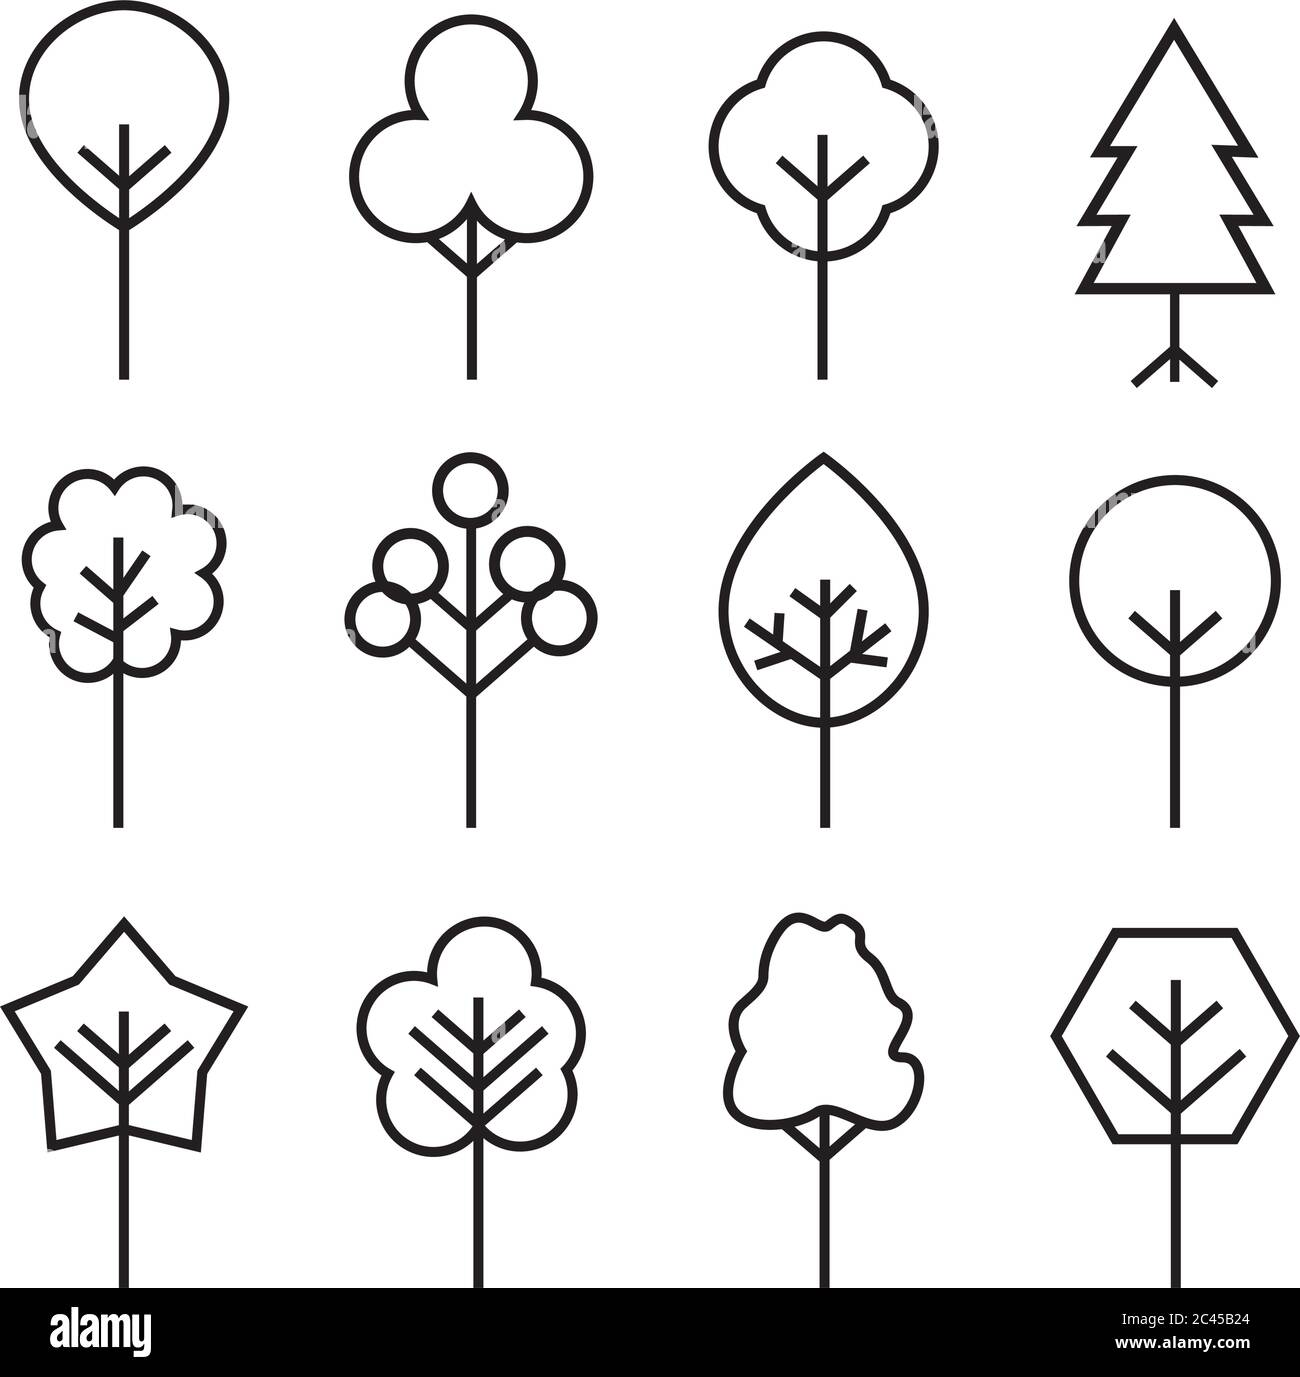 Insieme di icone struttura. Icone sottili della struttura astratta. Delineare le piante lineari. Riempimento tratto modificabile. Simbolo vettore isolato semplice ad albero. Illustrazione Vettoriale